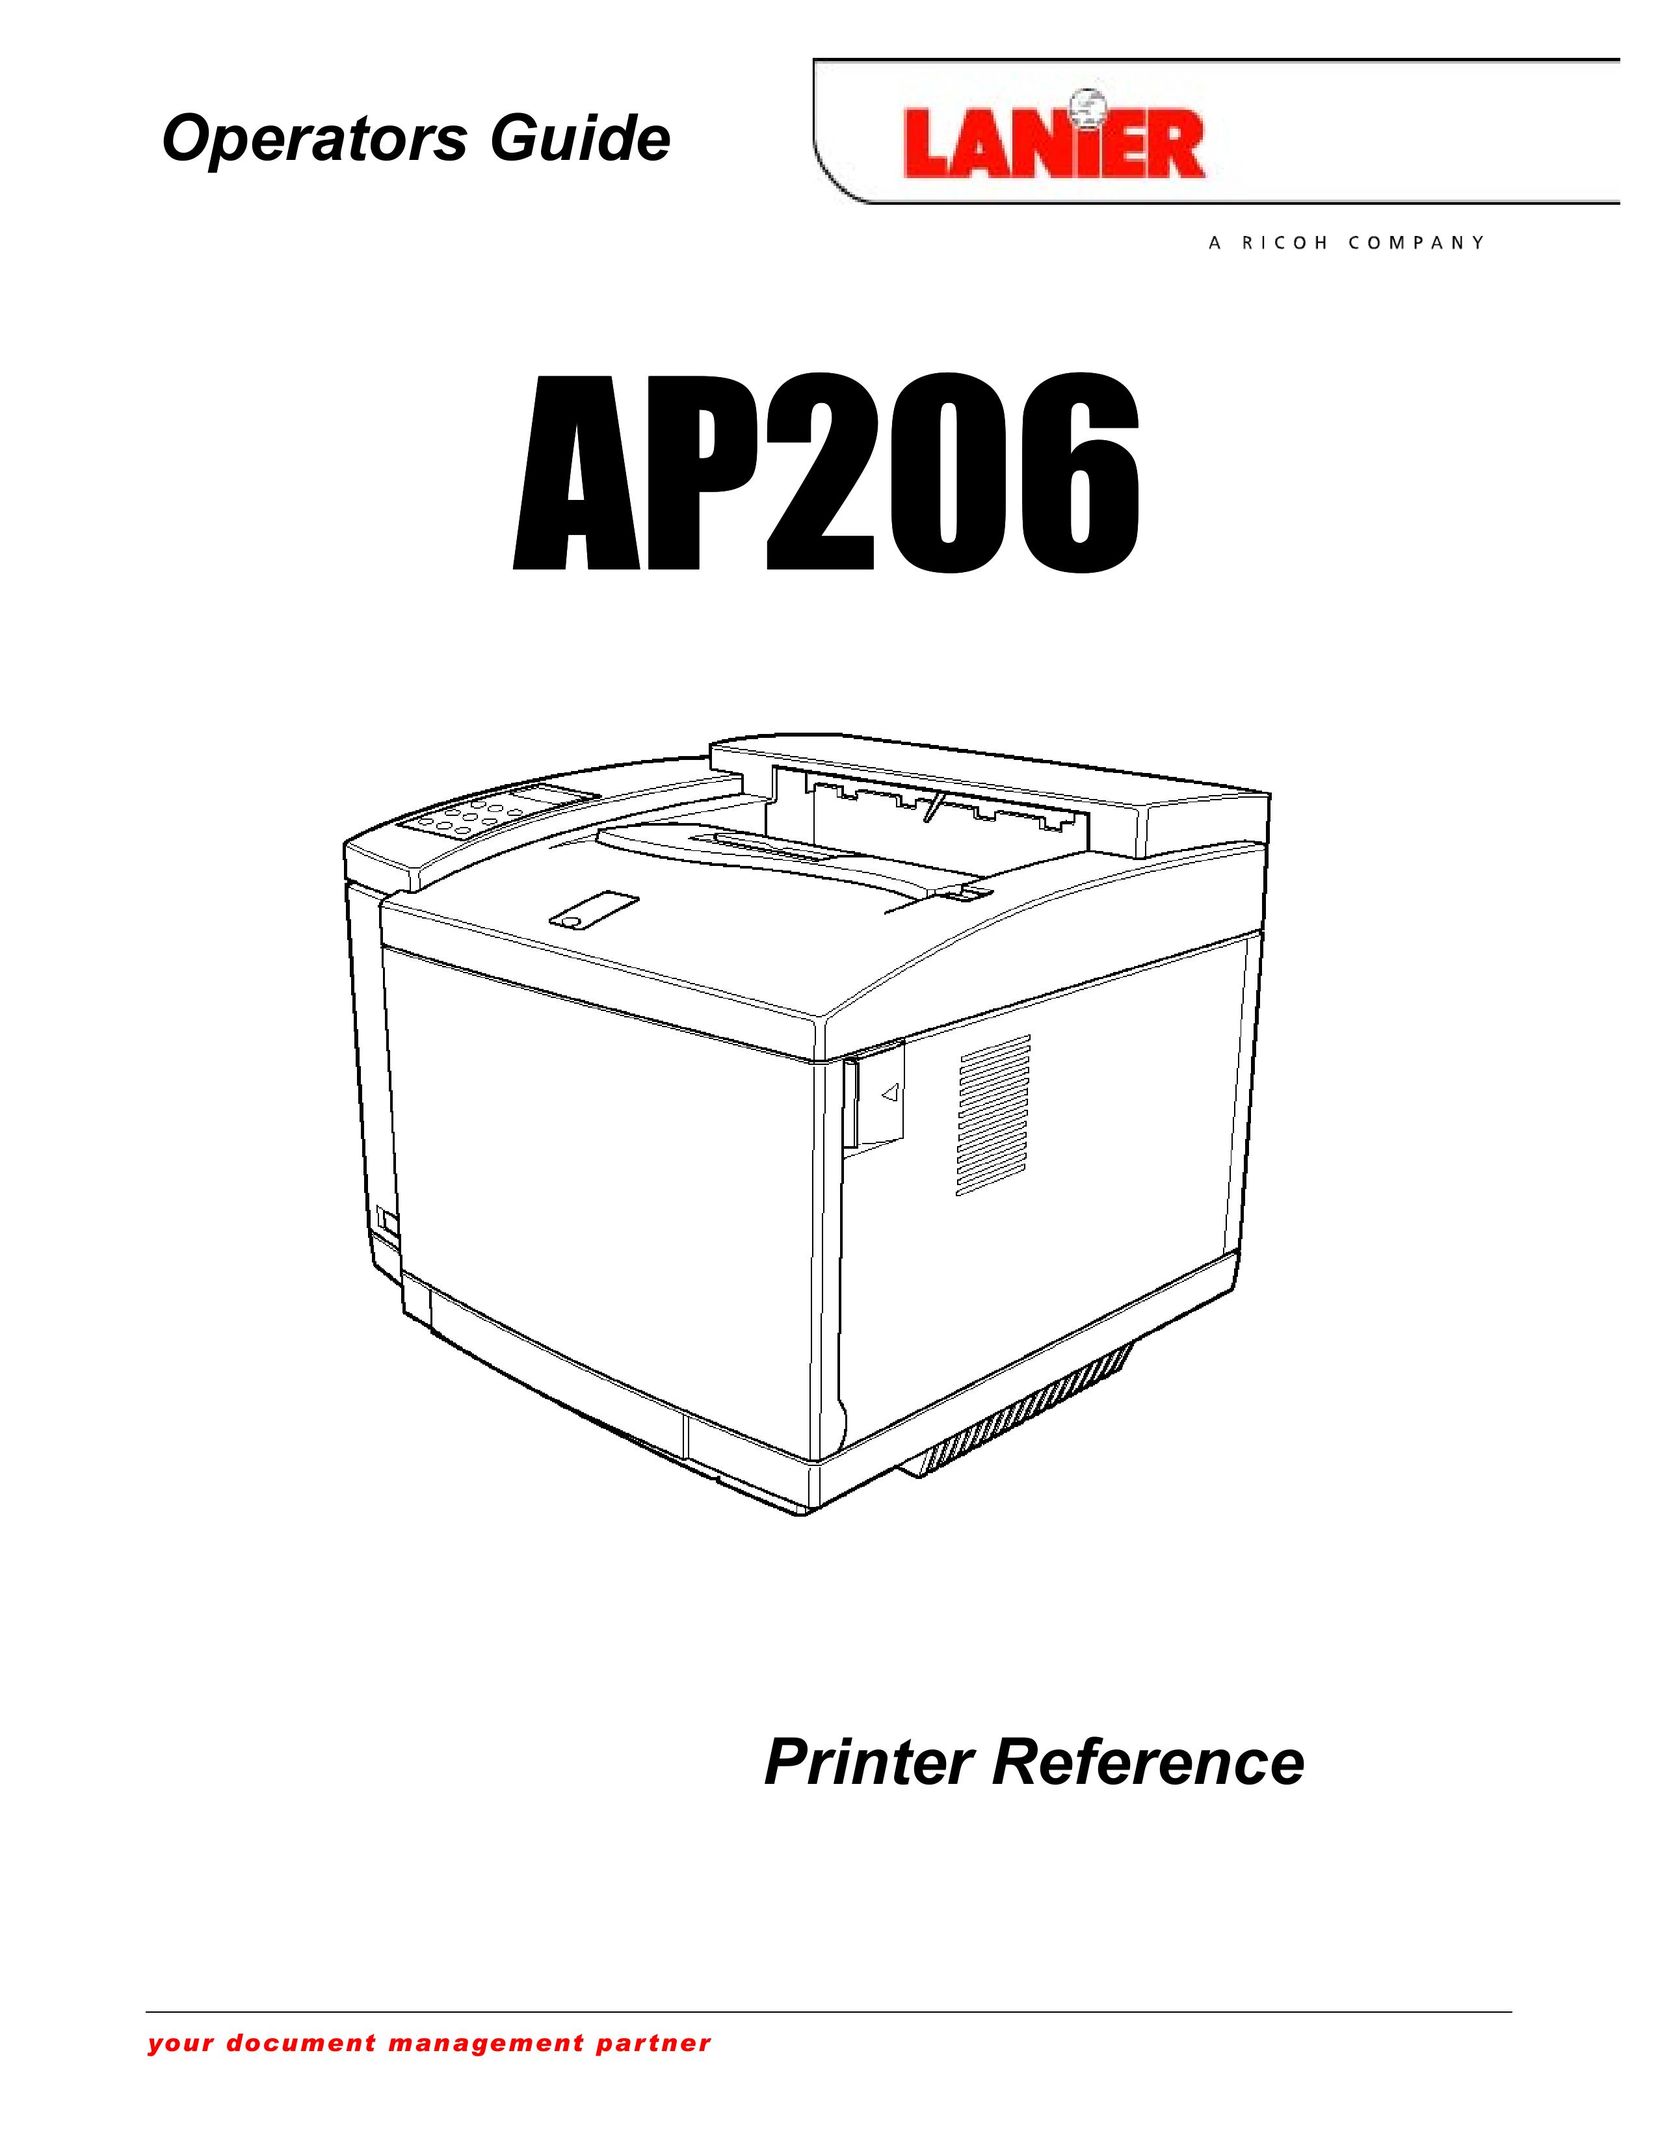 Lanier AP206 Printer User Manual